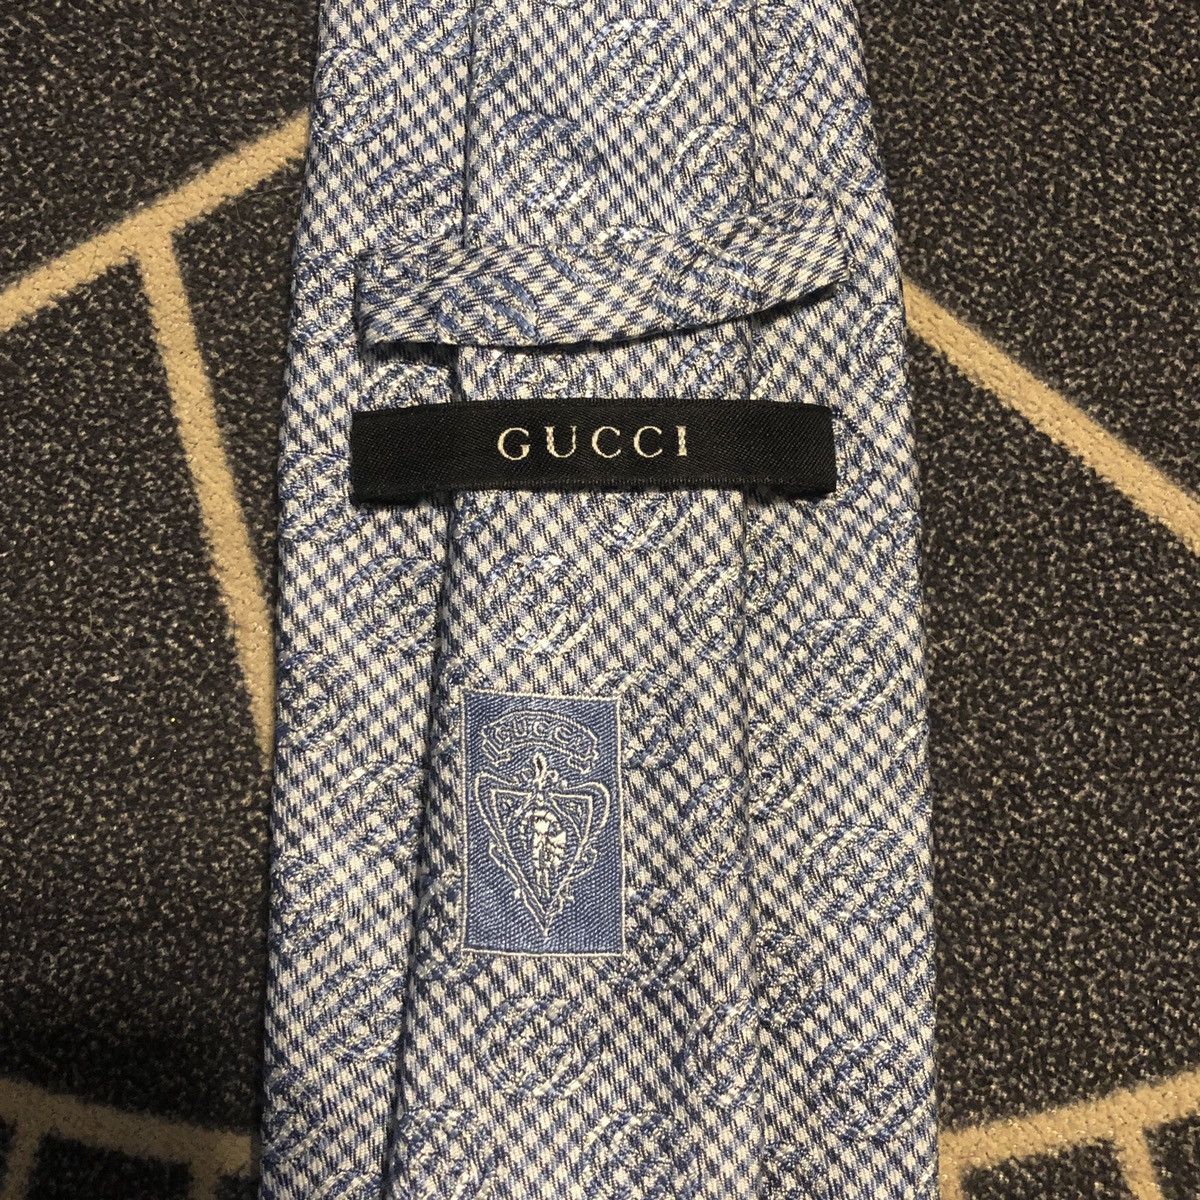 Gucci Gucci - vintage tie 🐝 | Grailed